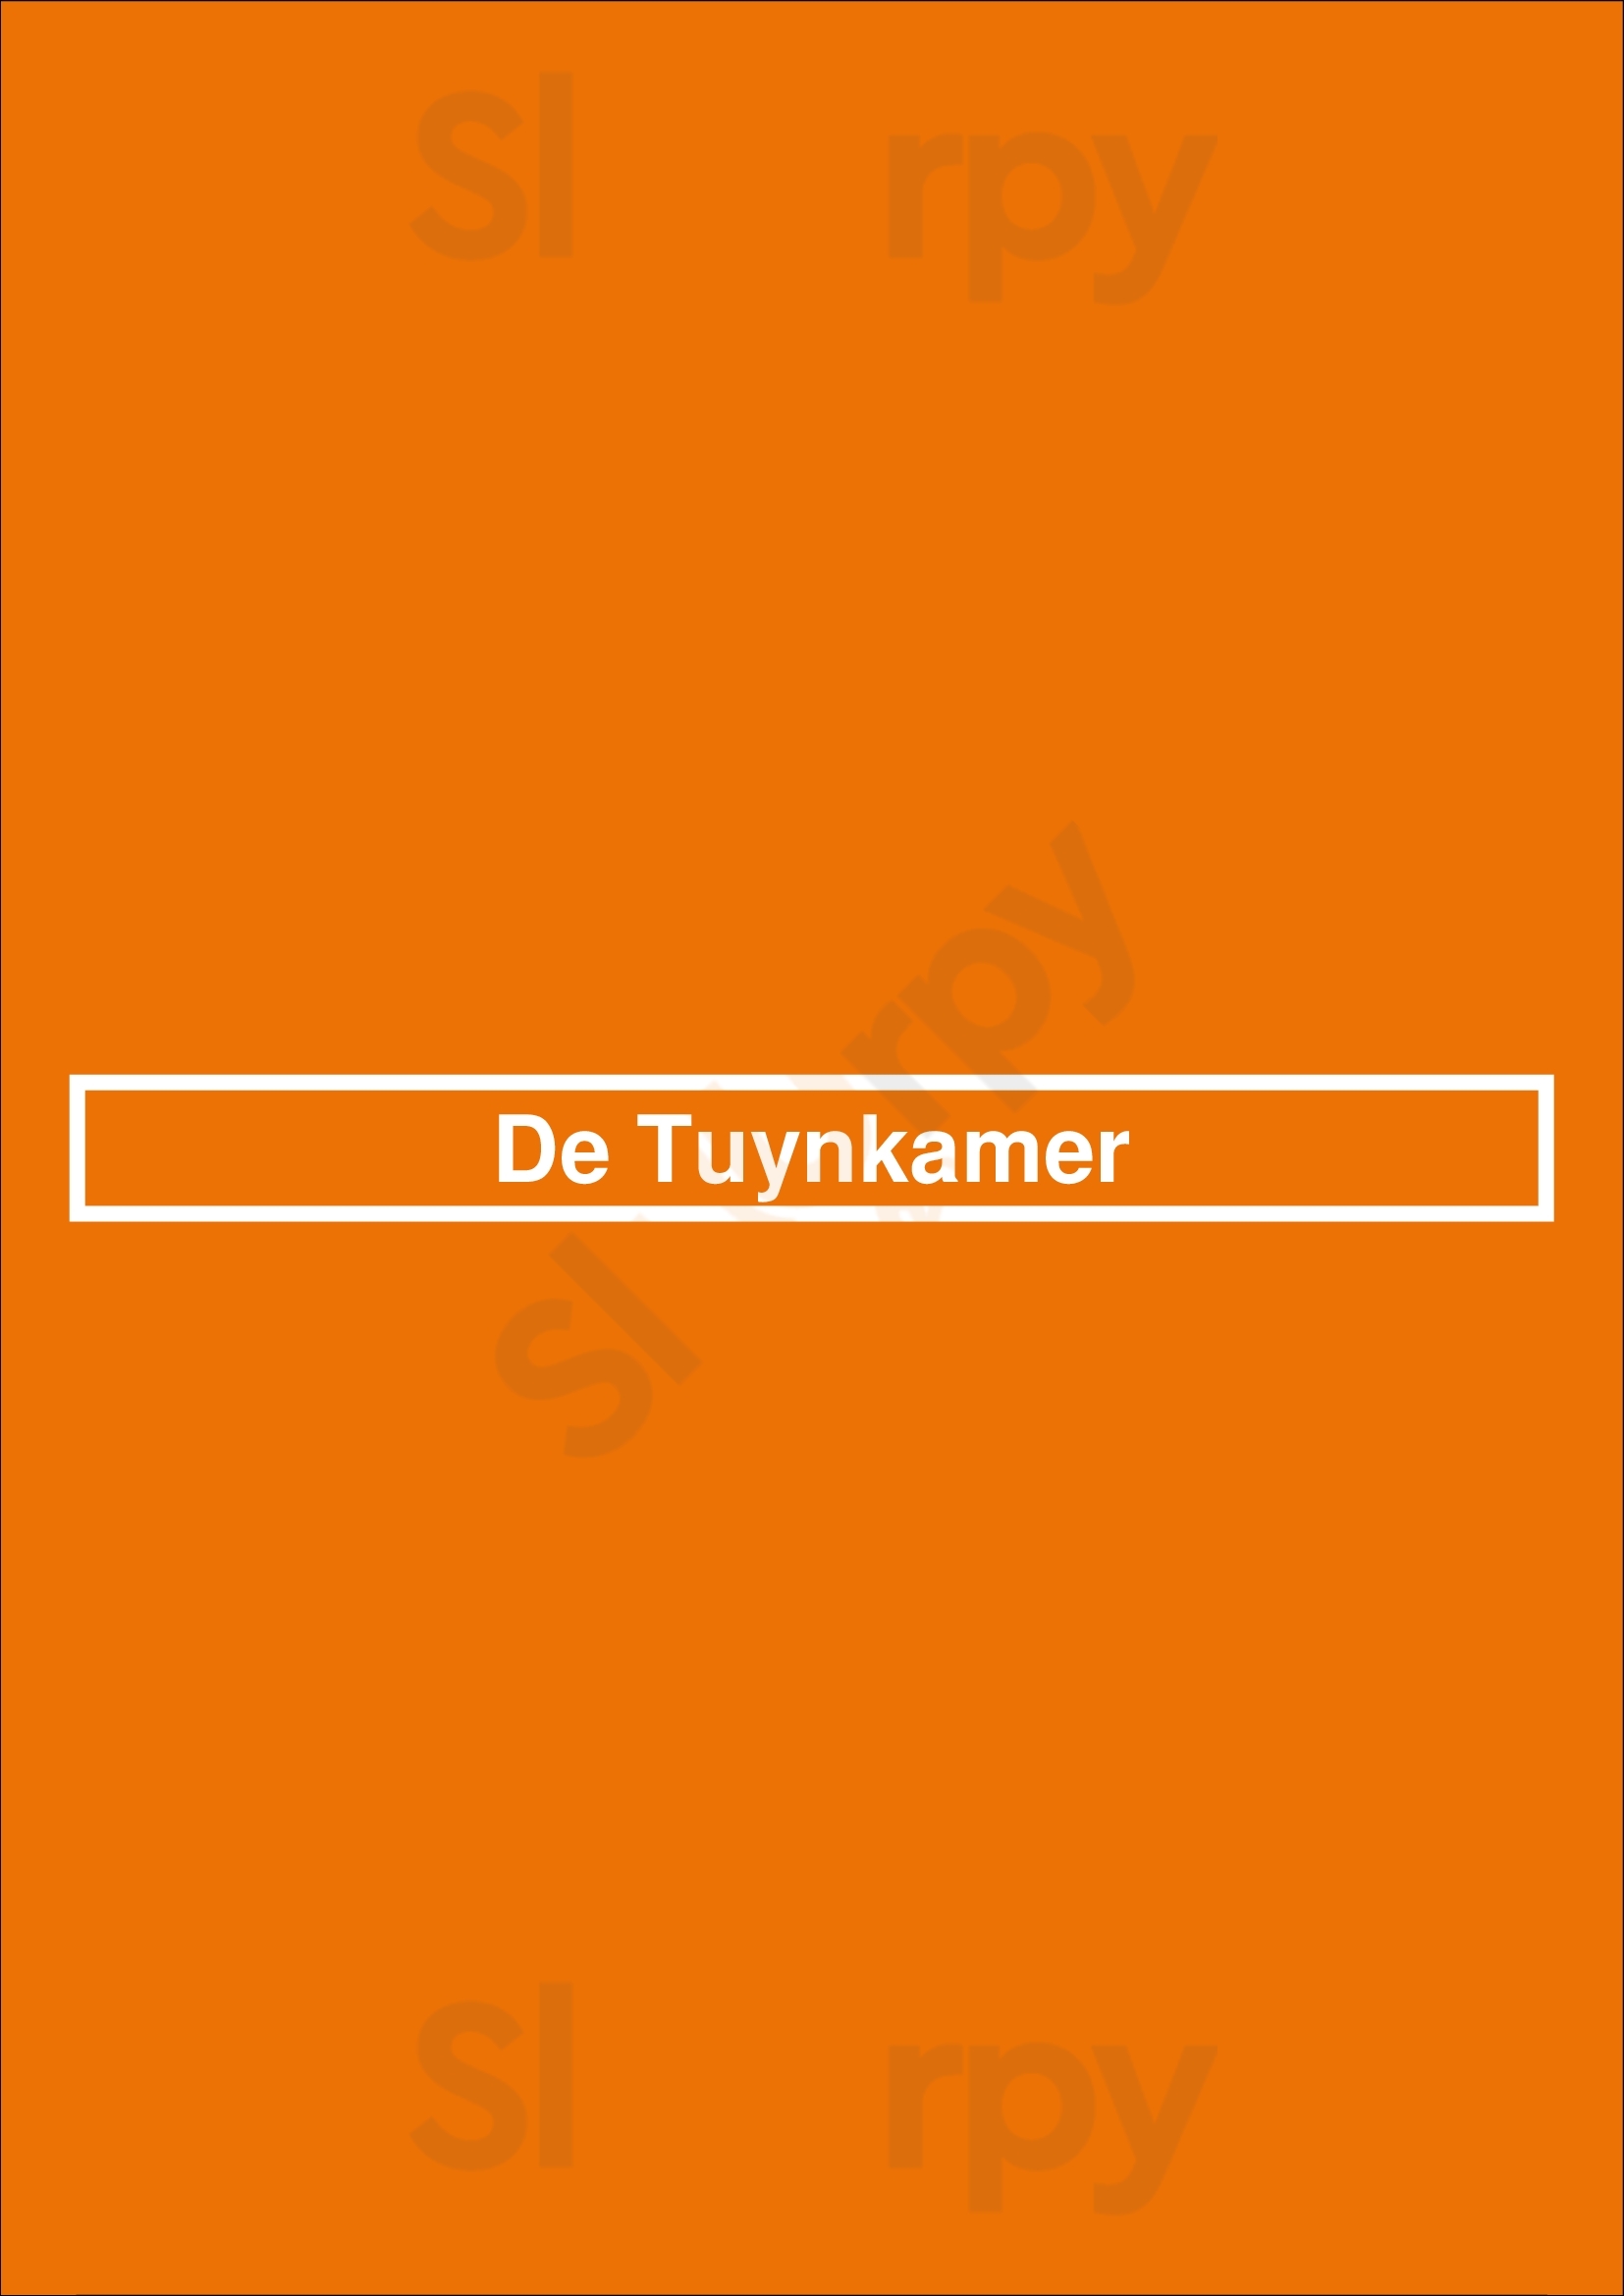 De Tuynkamer Hoorn Menu - 1